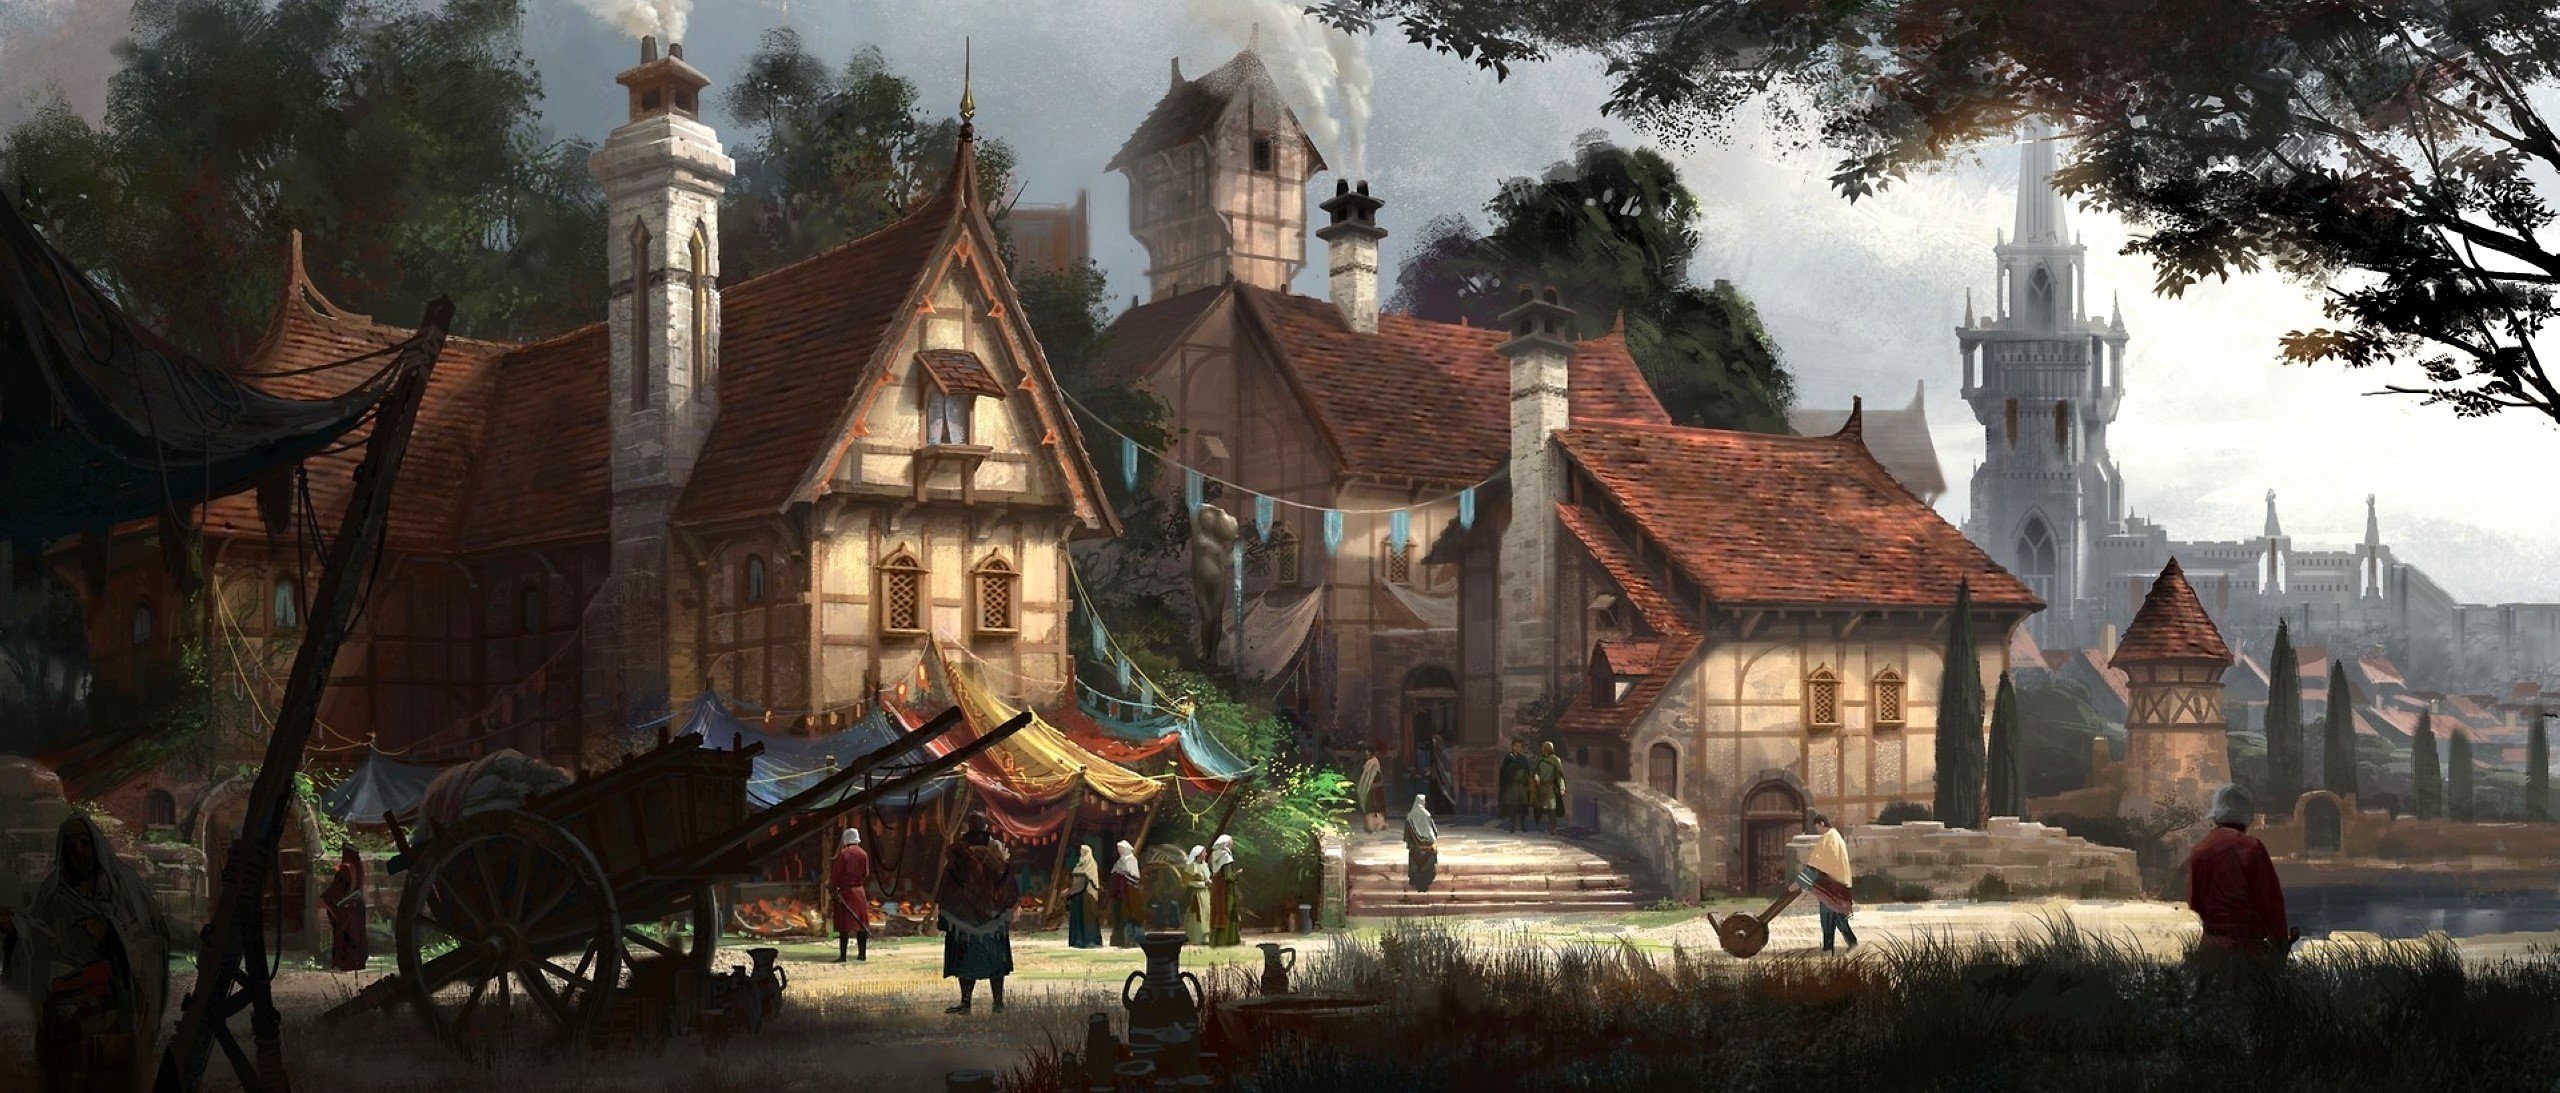 Деревня средневековья фэнтези арт